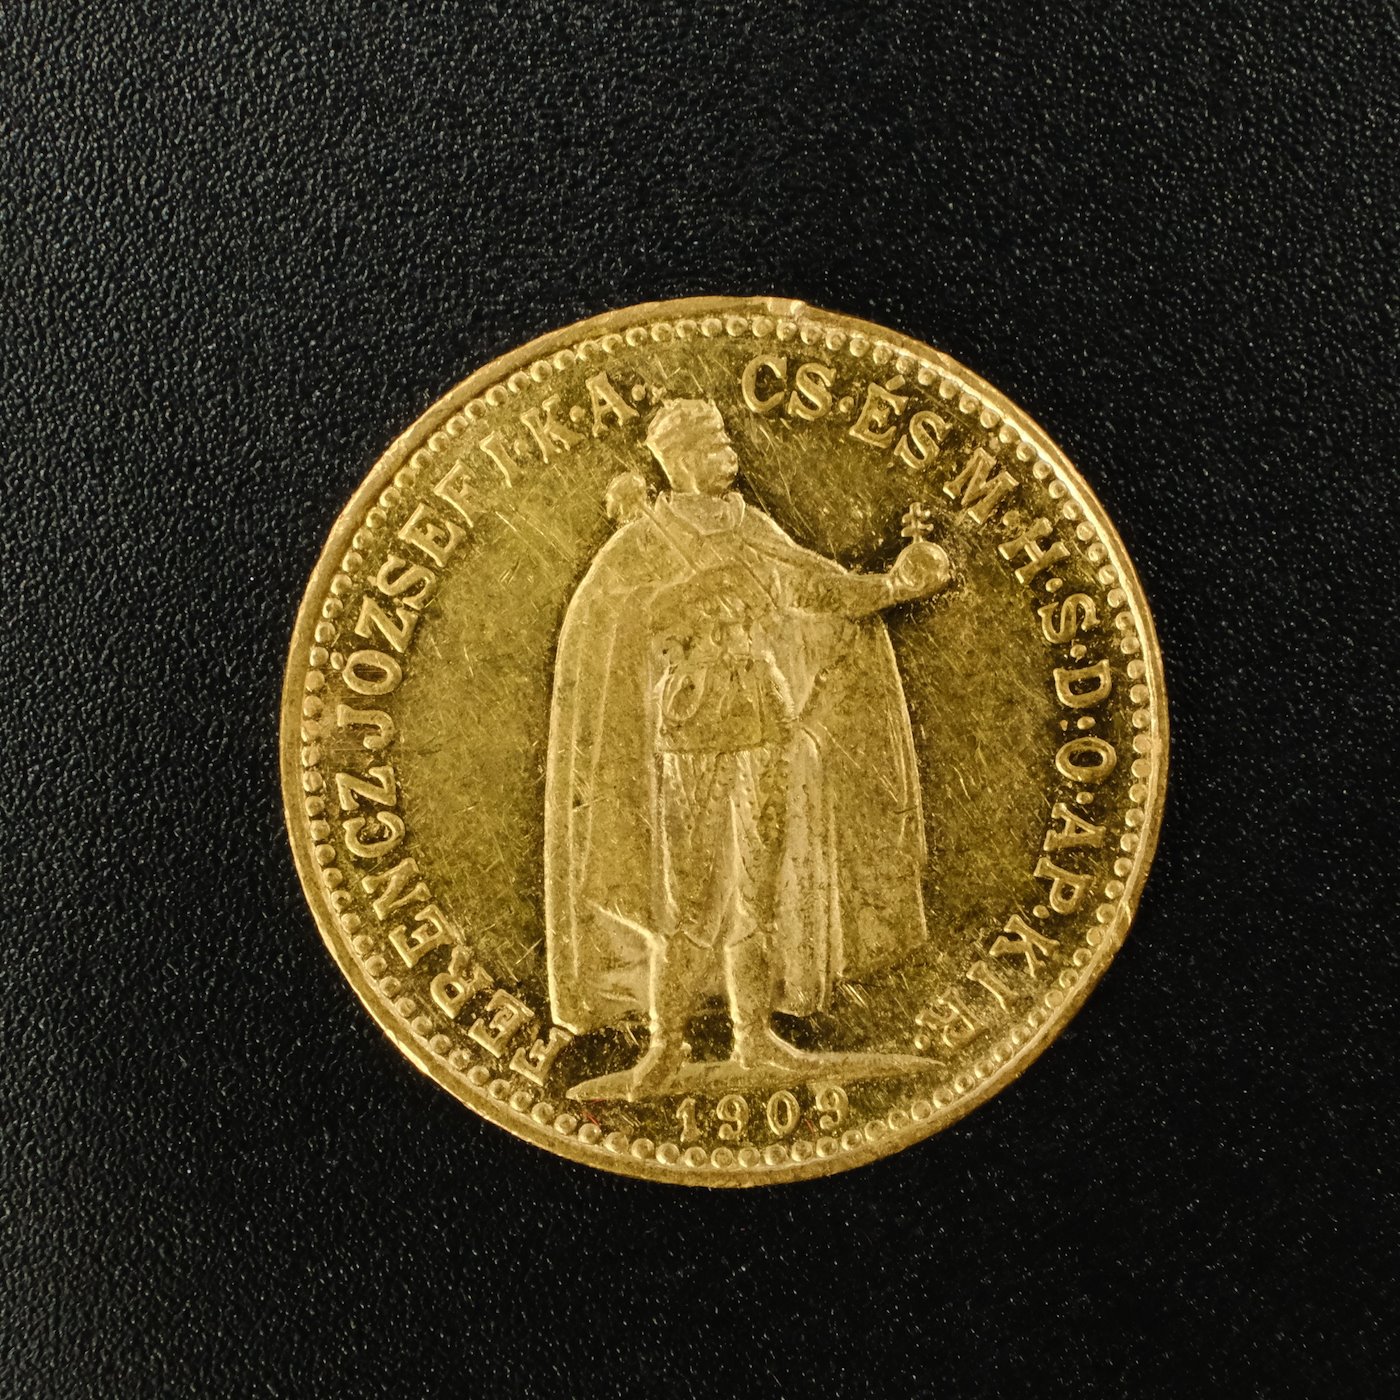 Mince - Rakousko Uhersko zlatá 10 Koruna 1909 K.B. uherská, zlato 900/1000, hrubá hmotnost mince 3,387g